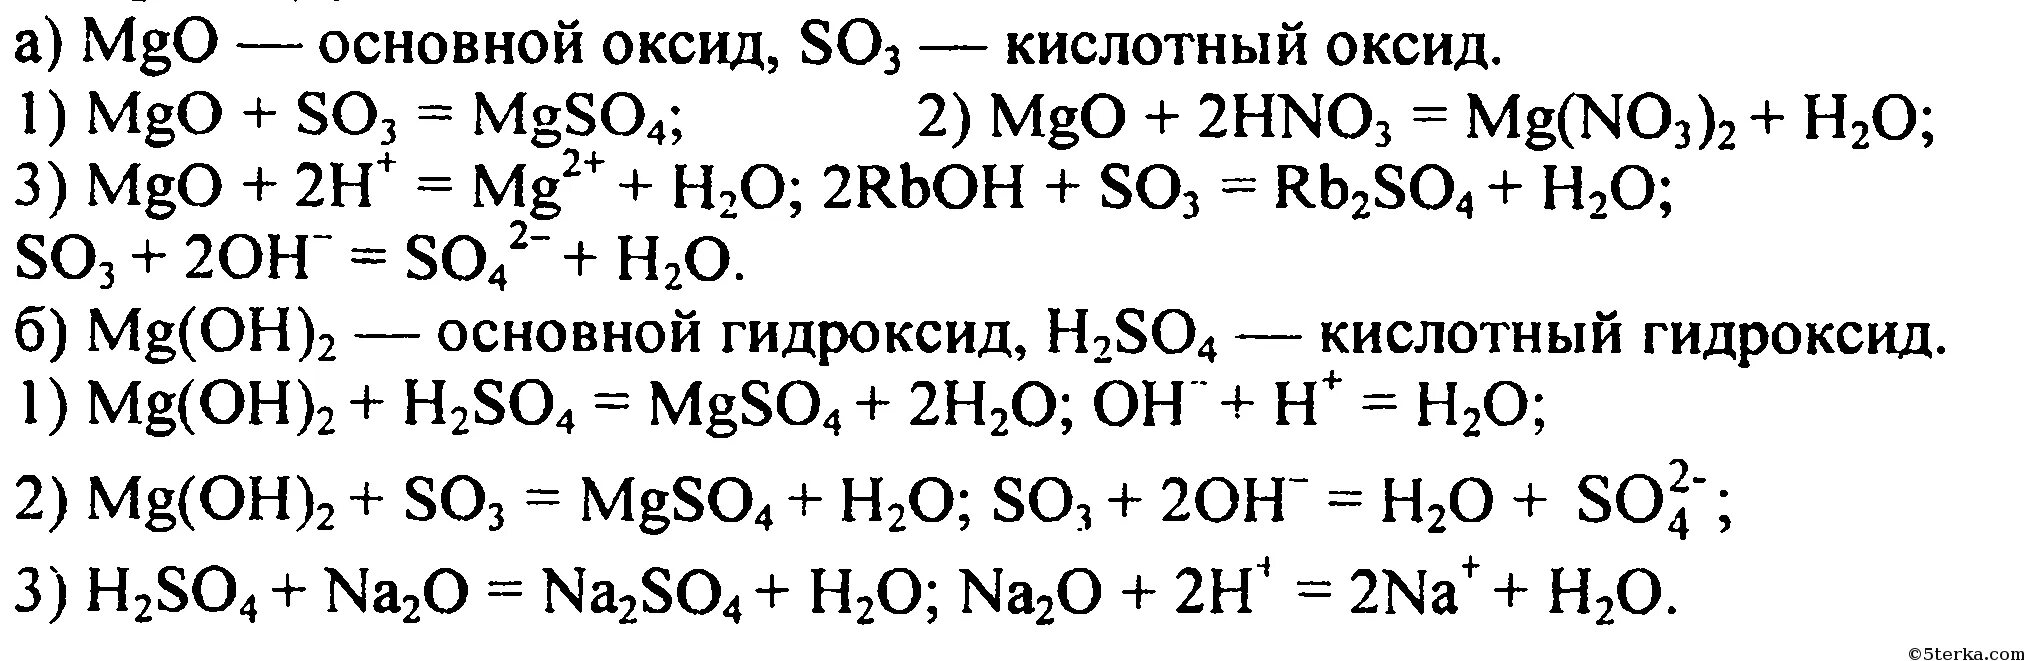 Цепочка реакций с магнием. Уравнение химической реакции MGO И so3. Химические уравнения магний хлор 2. MGO+h2so4 уравнение реакции.